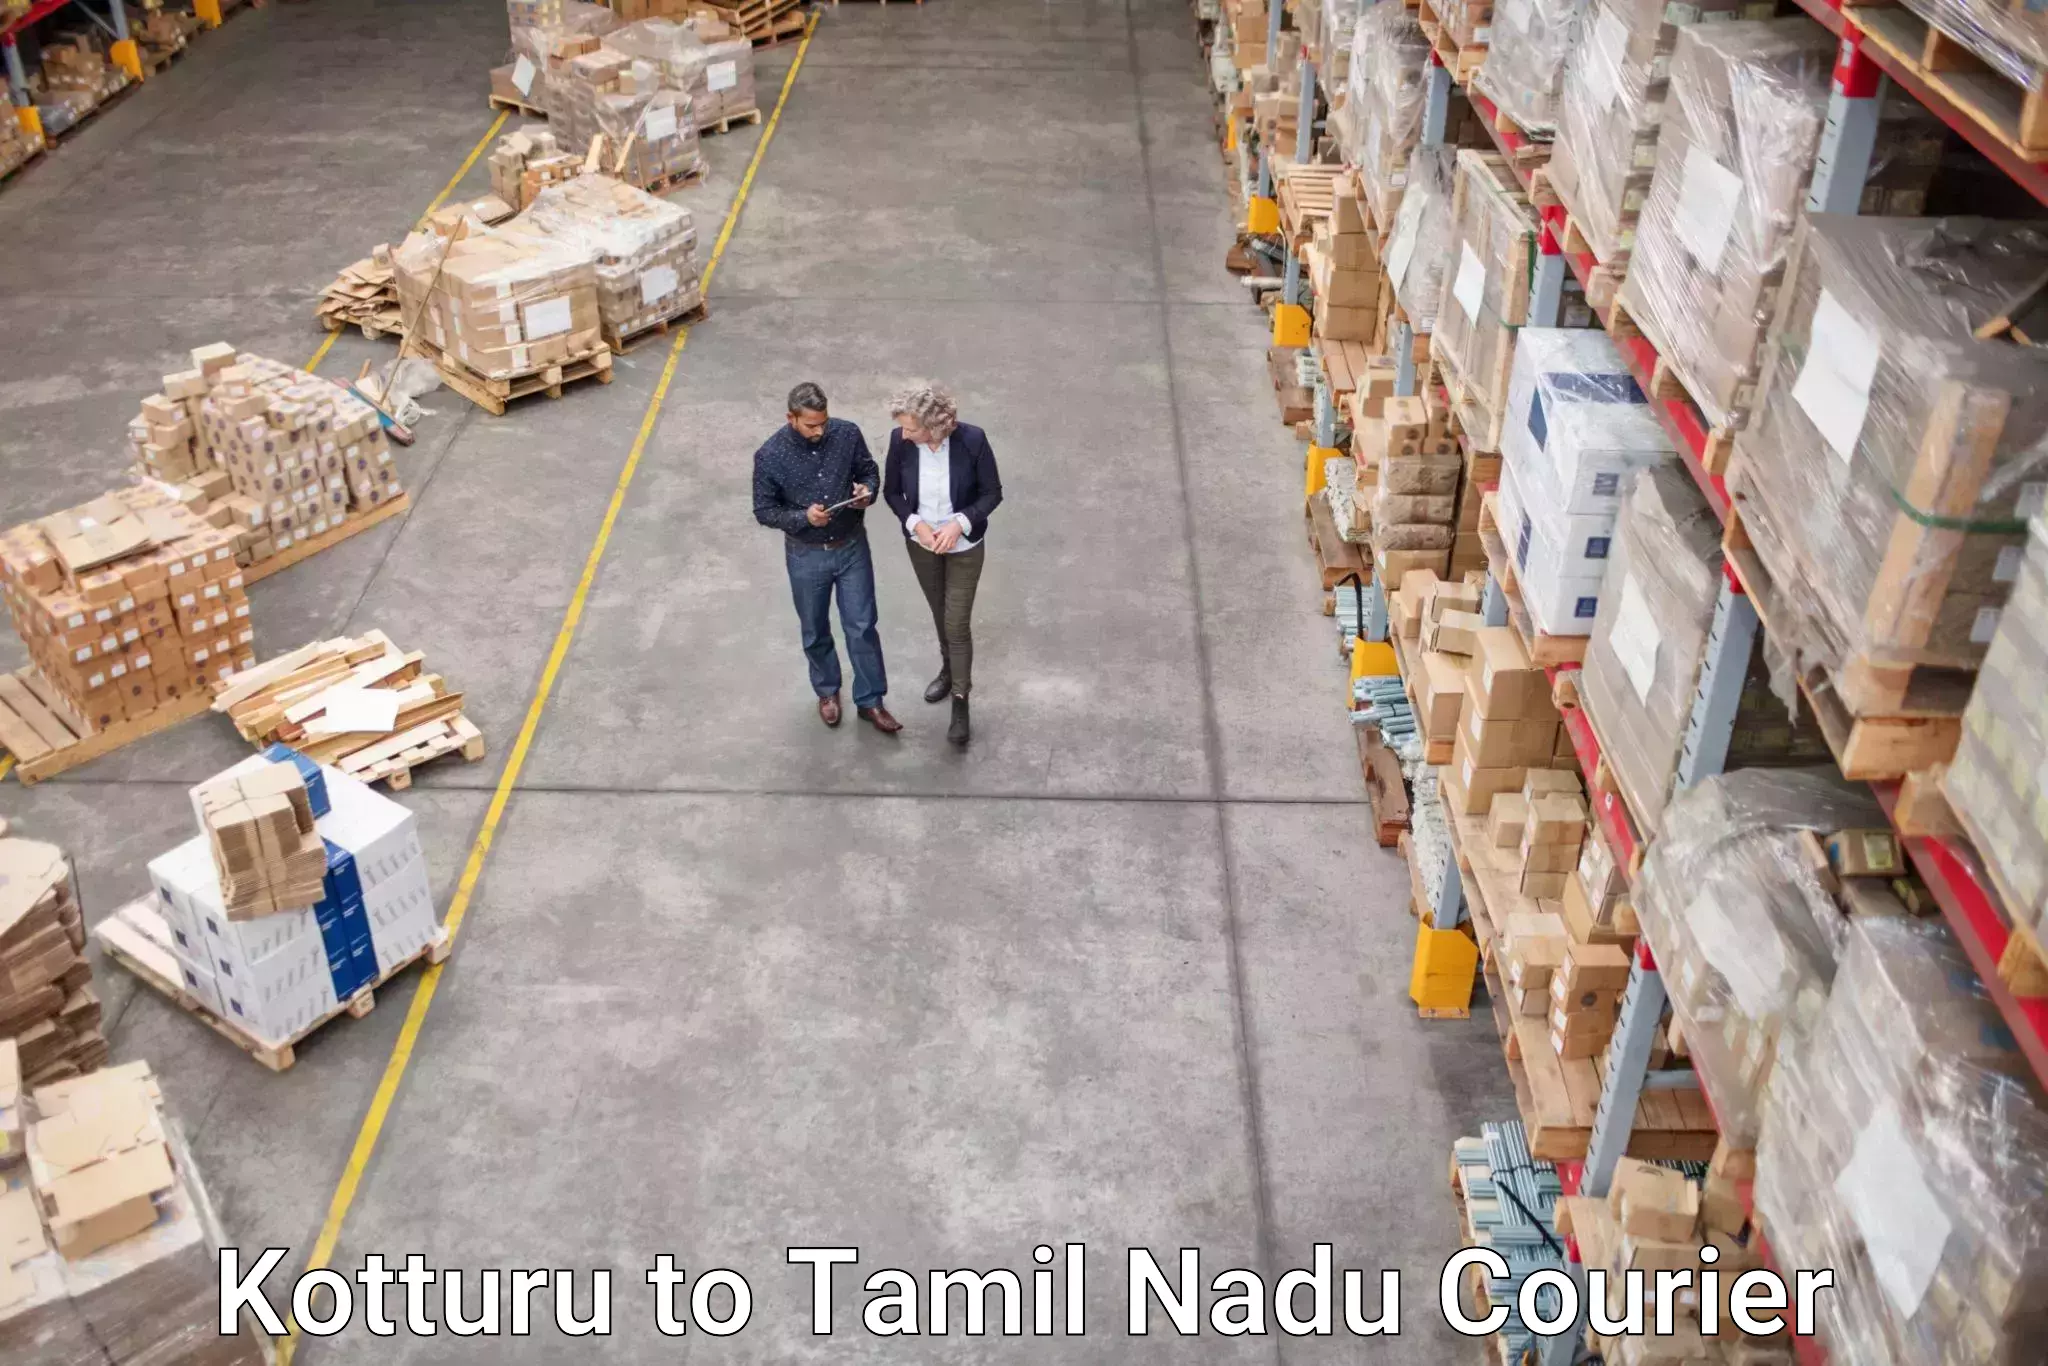 Customer-friendly courier services in Kotturu to Tamil Nadu